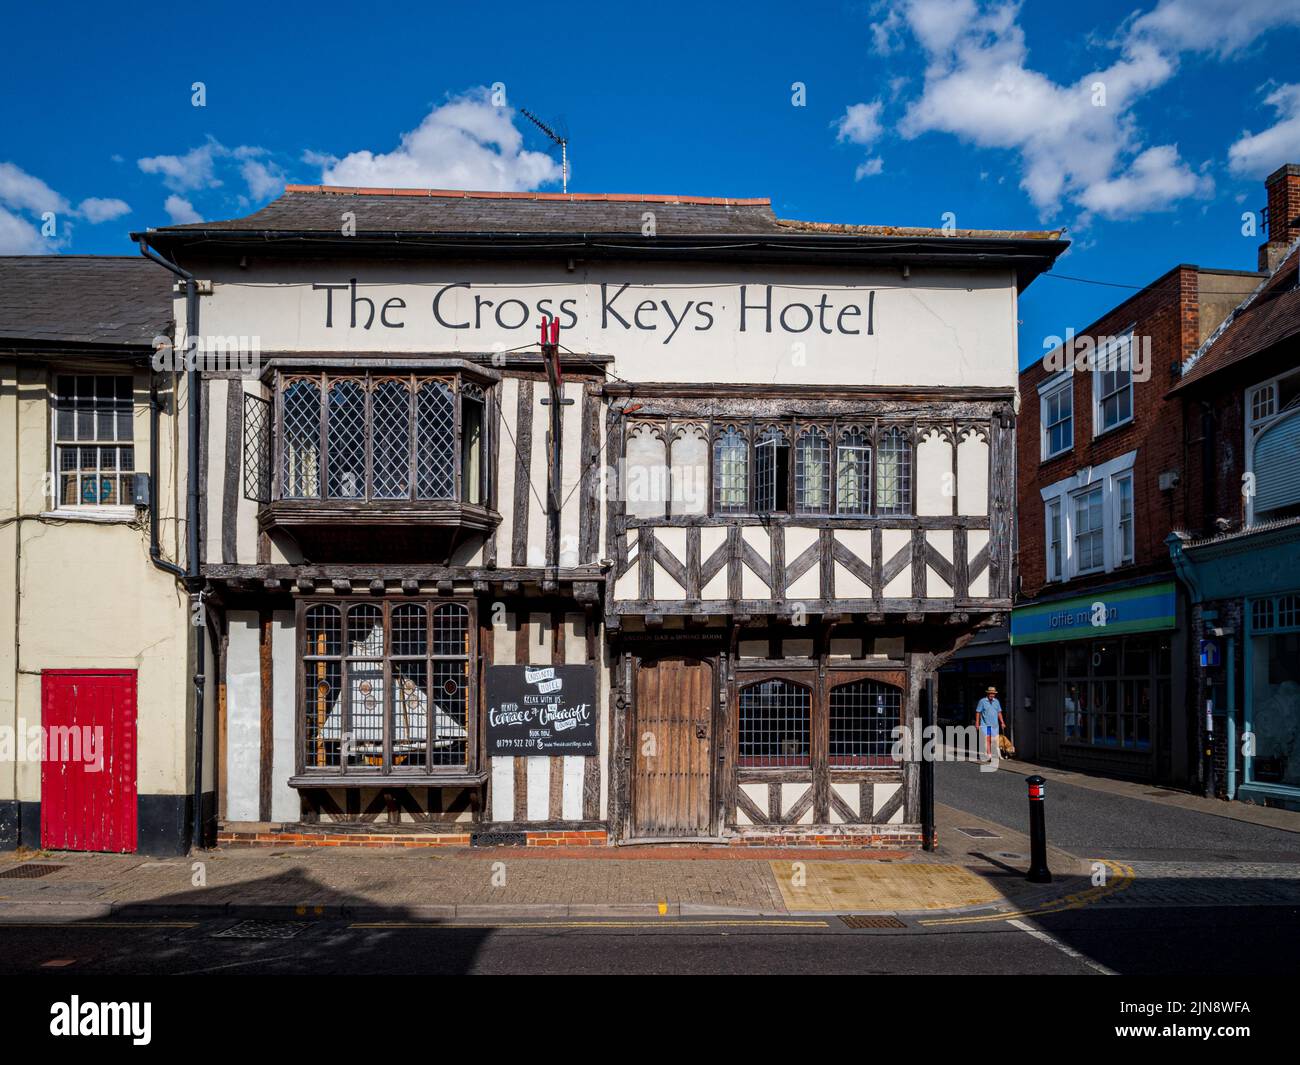 The Cross Keys Hotel Saffron Walden Essex UK. The Cross Keys Hotel is a 16th century ten-bedroom Inn in Saffron Walden town centre. Stock Photo